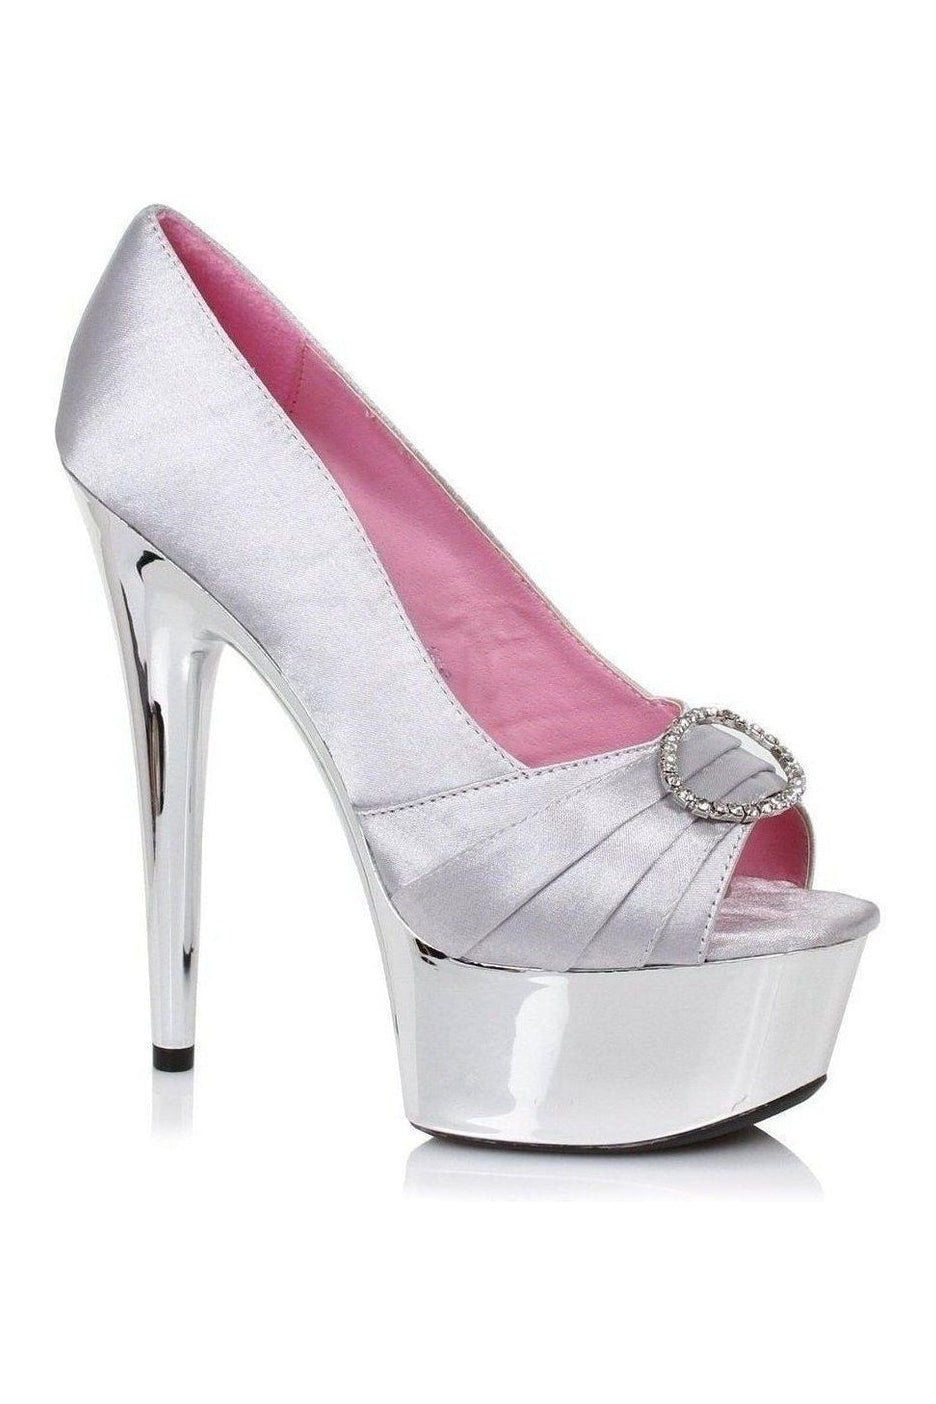 Ellie Shoes Silver Pumps Platform Stripper Shoes | Buy at Sexyshoes.com